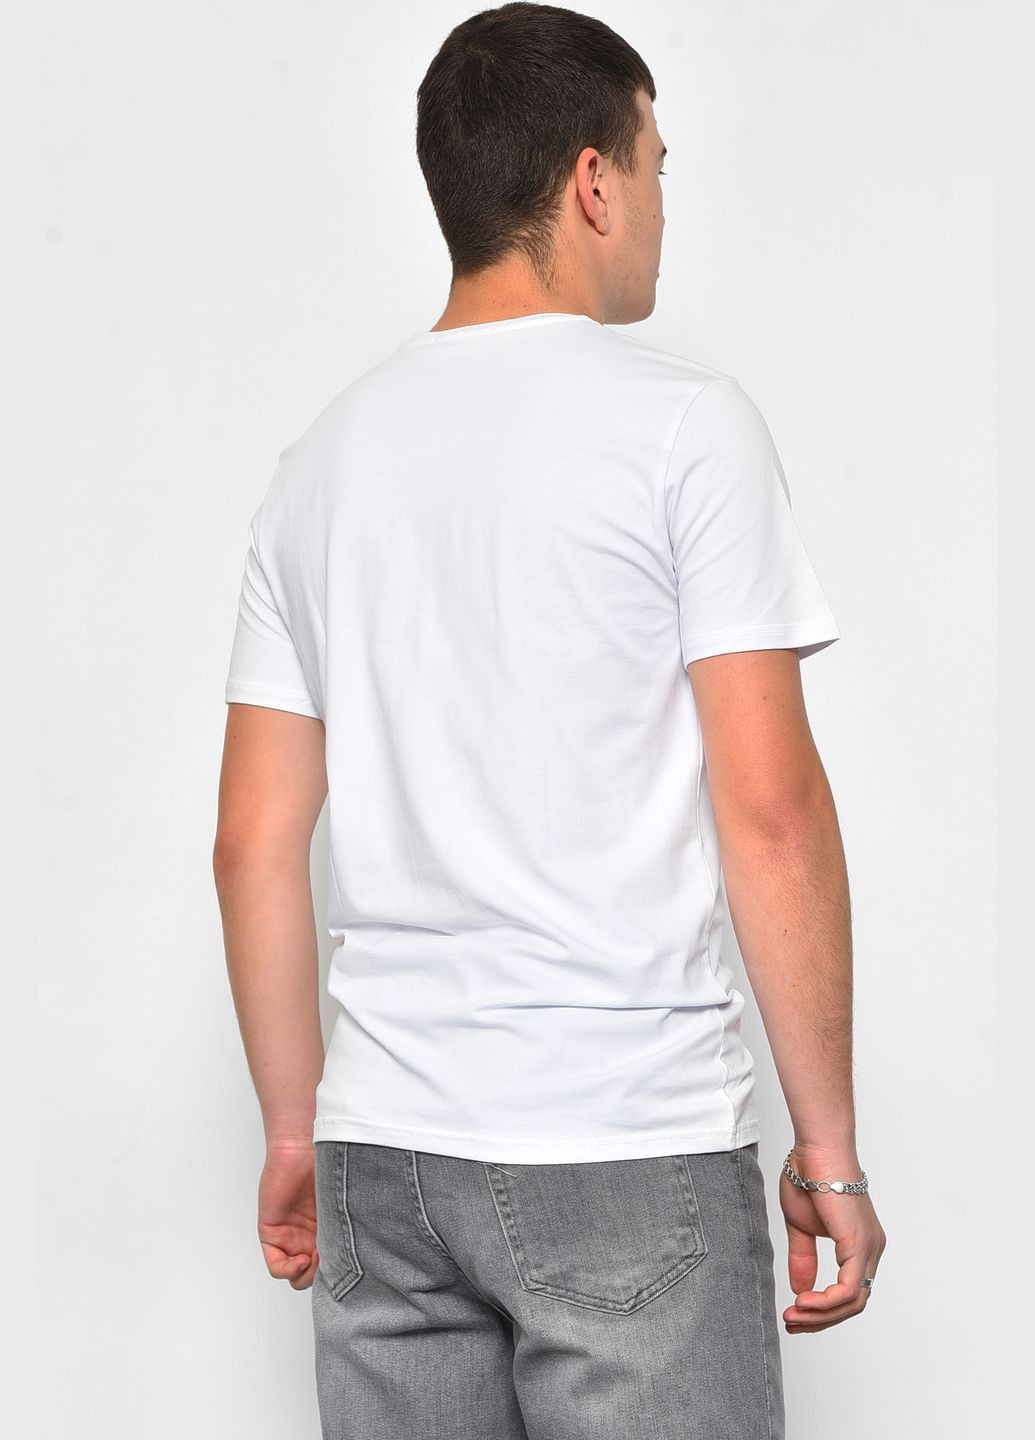 Біла футболка чоловіча напівбатальна білого кольору Let's Shop